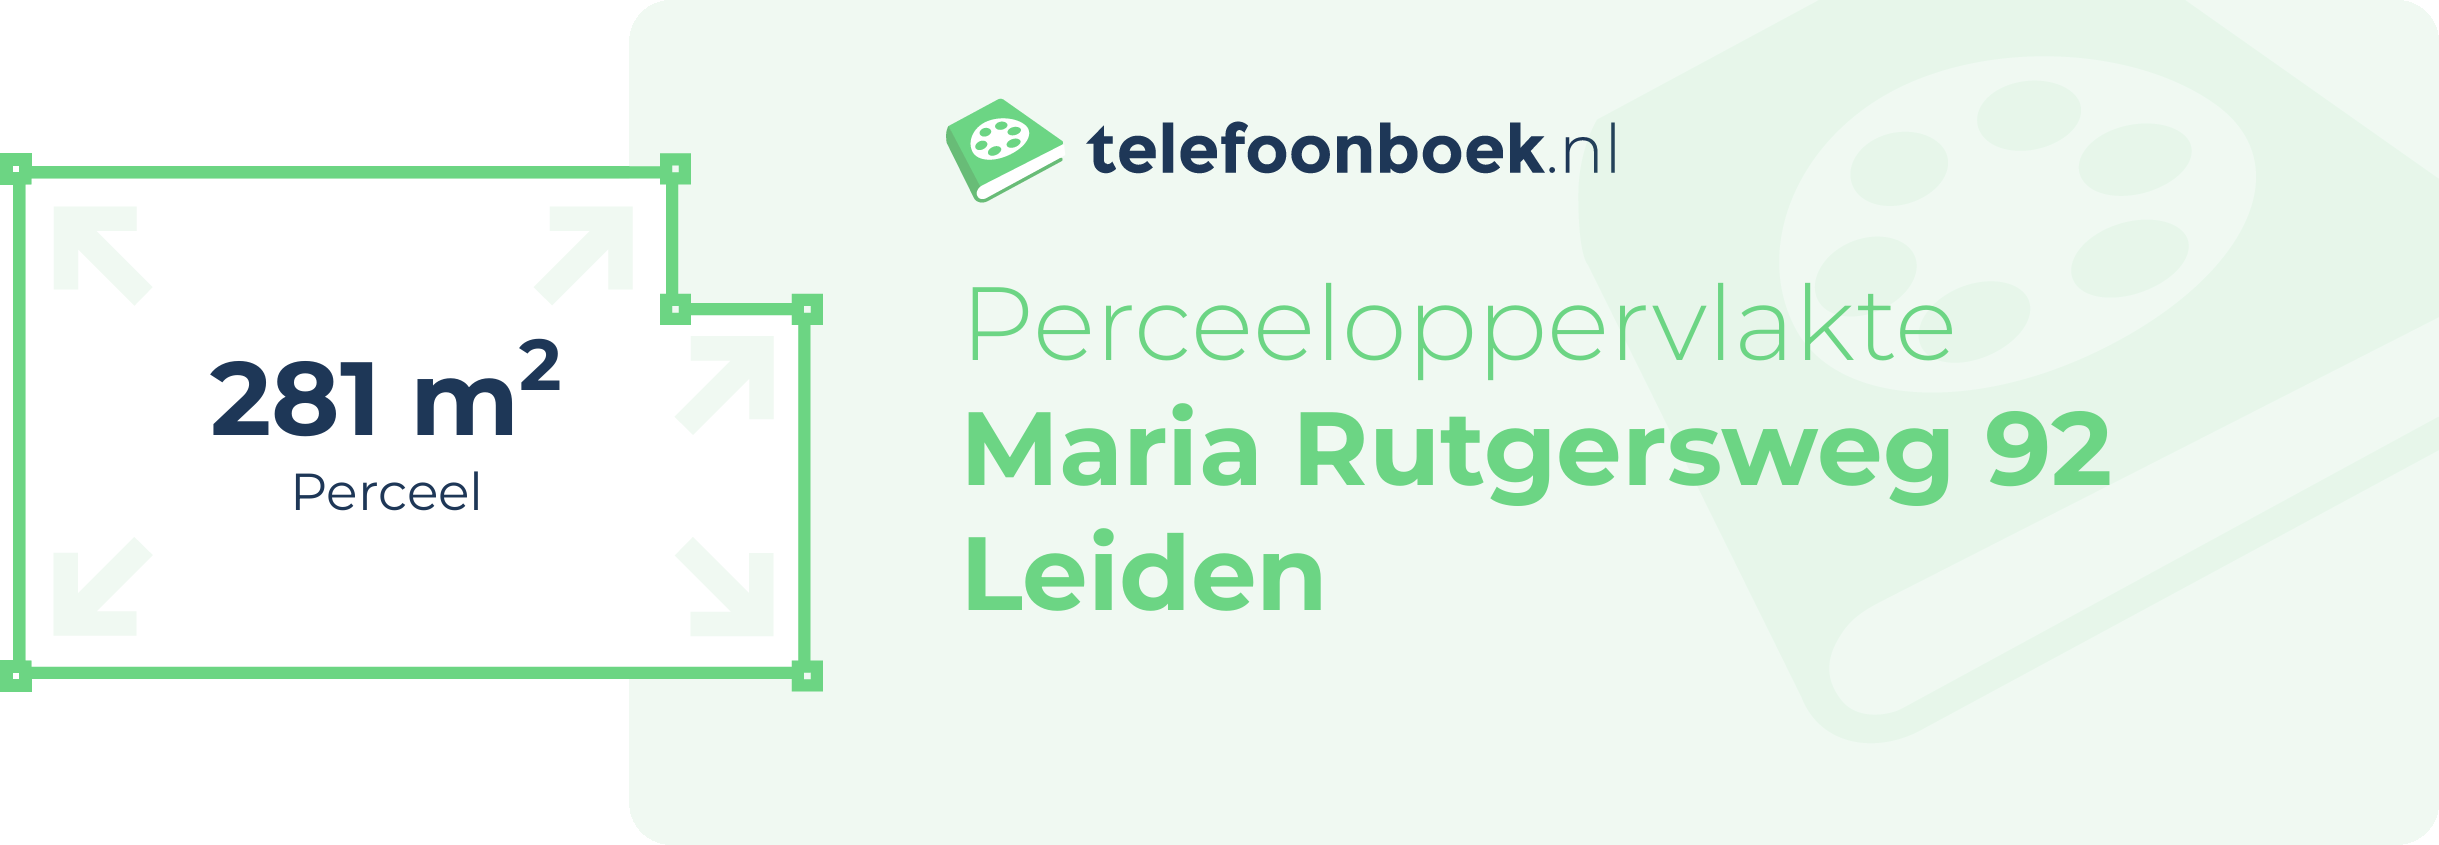 Perceeloppervlakte Maria Rutgersweg 92 Leiden